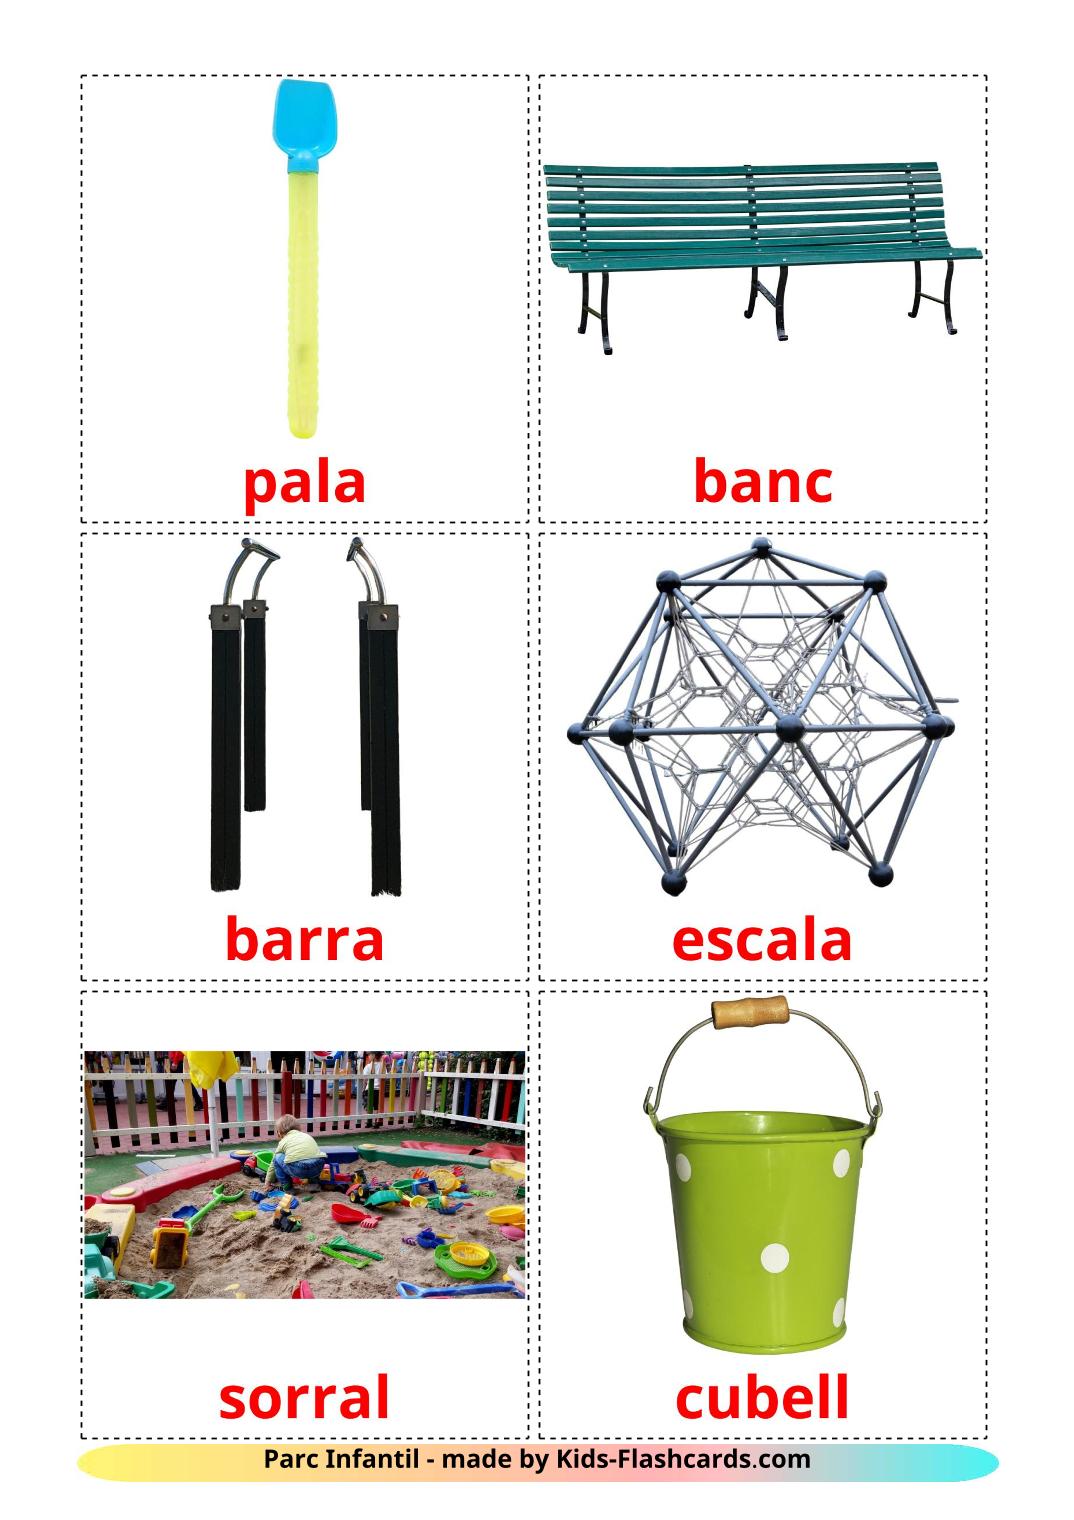 Parque infantil - 13 fichas de catalán para imprimir gratis 